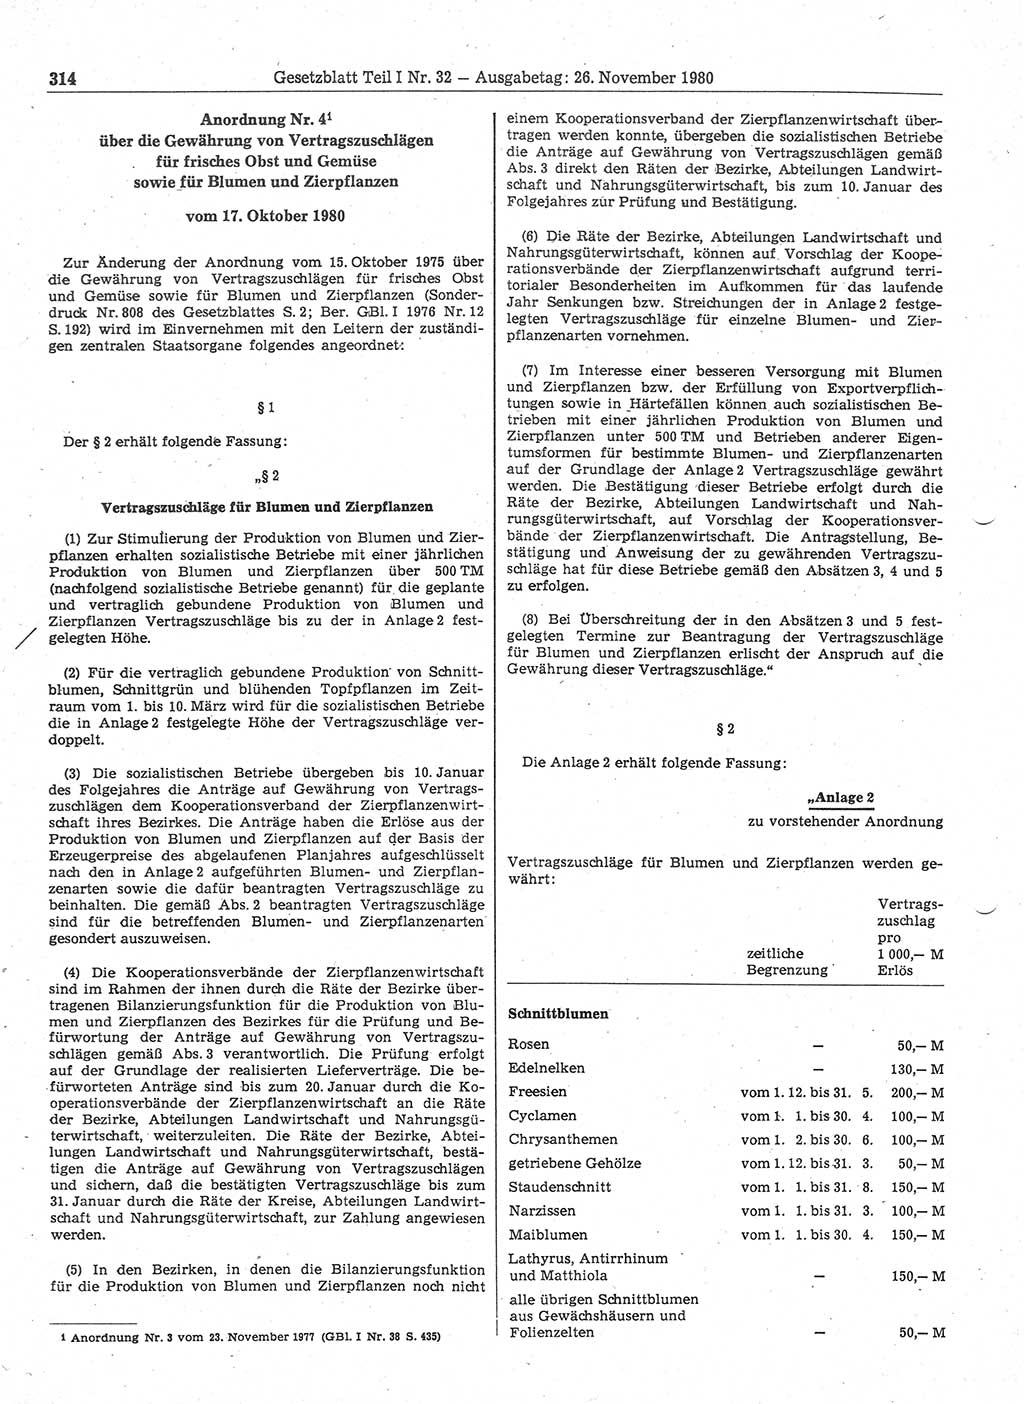 Gesetzblatt (GBl.) der Deutschen Demokratischen Republik (DDR) Teil Ⅰ 1980, Seite 314 (GBl. DDR Ⅰ 1980, S. 314)